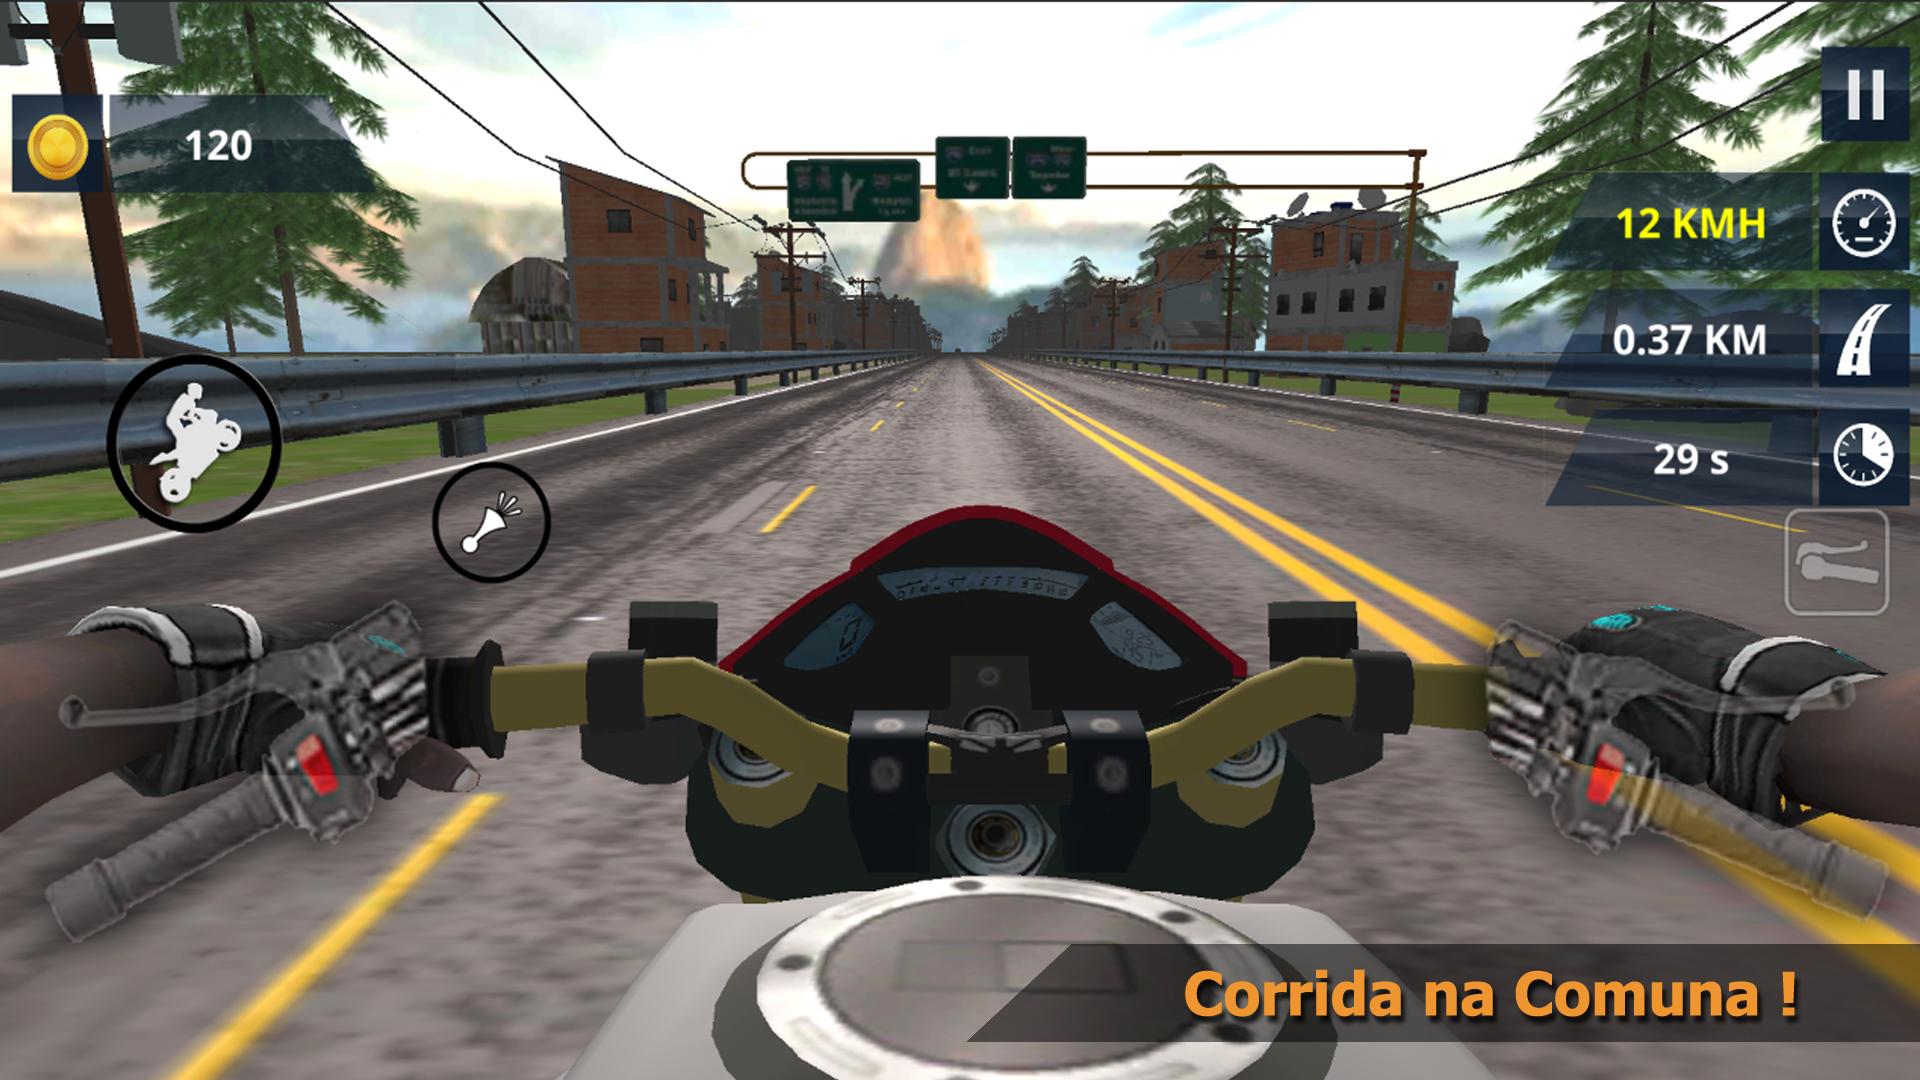 Grau Brasil - Jogos de Motos for Android - Download